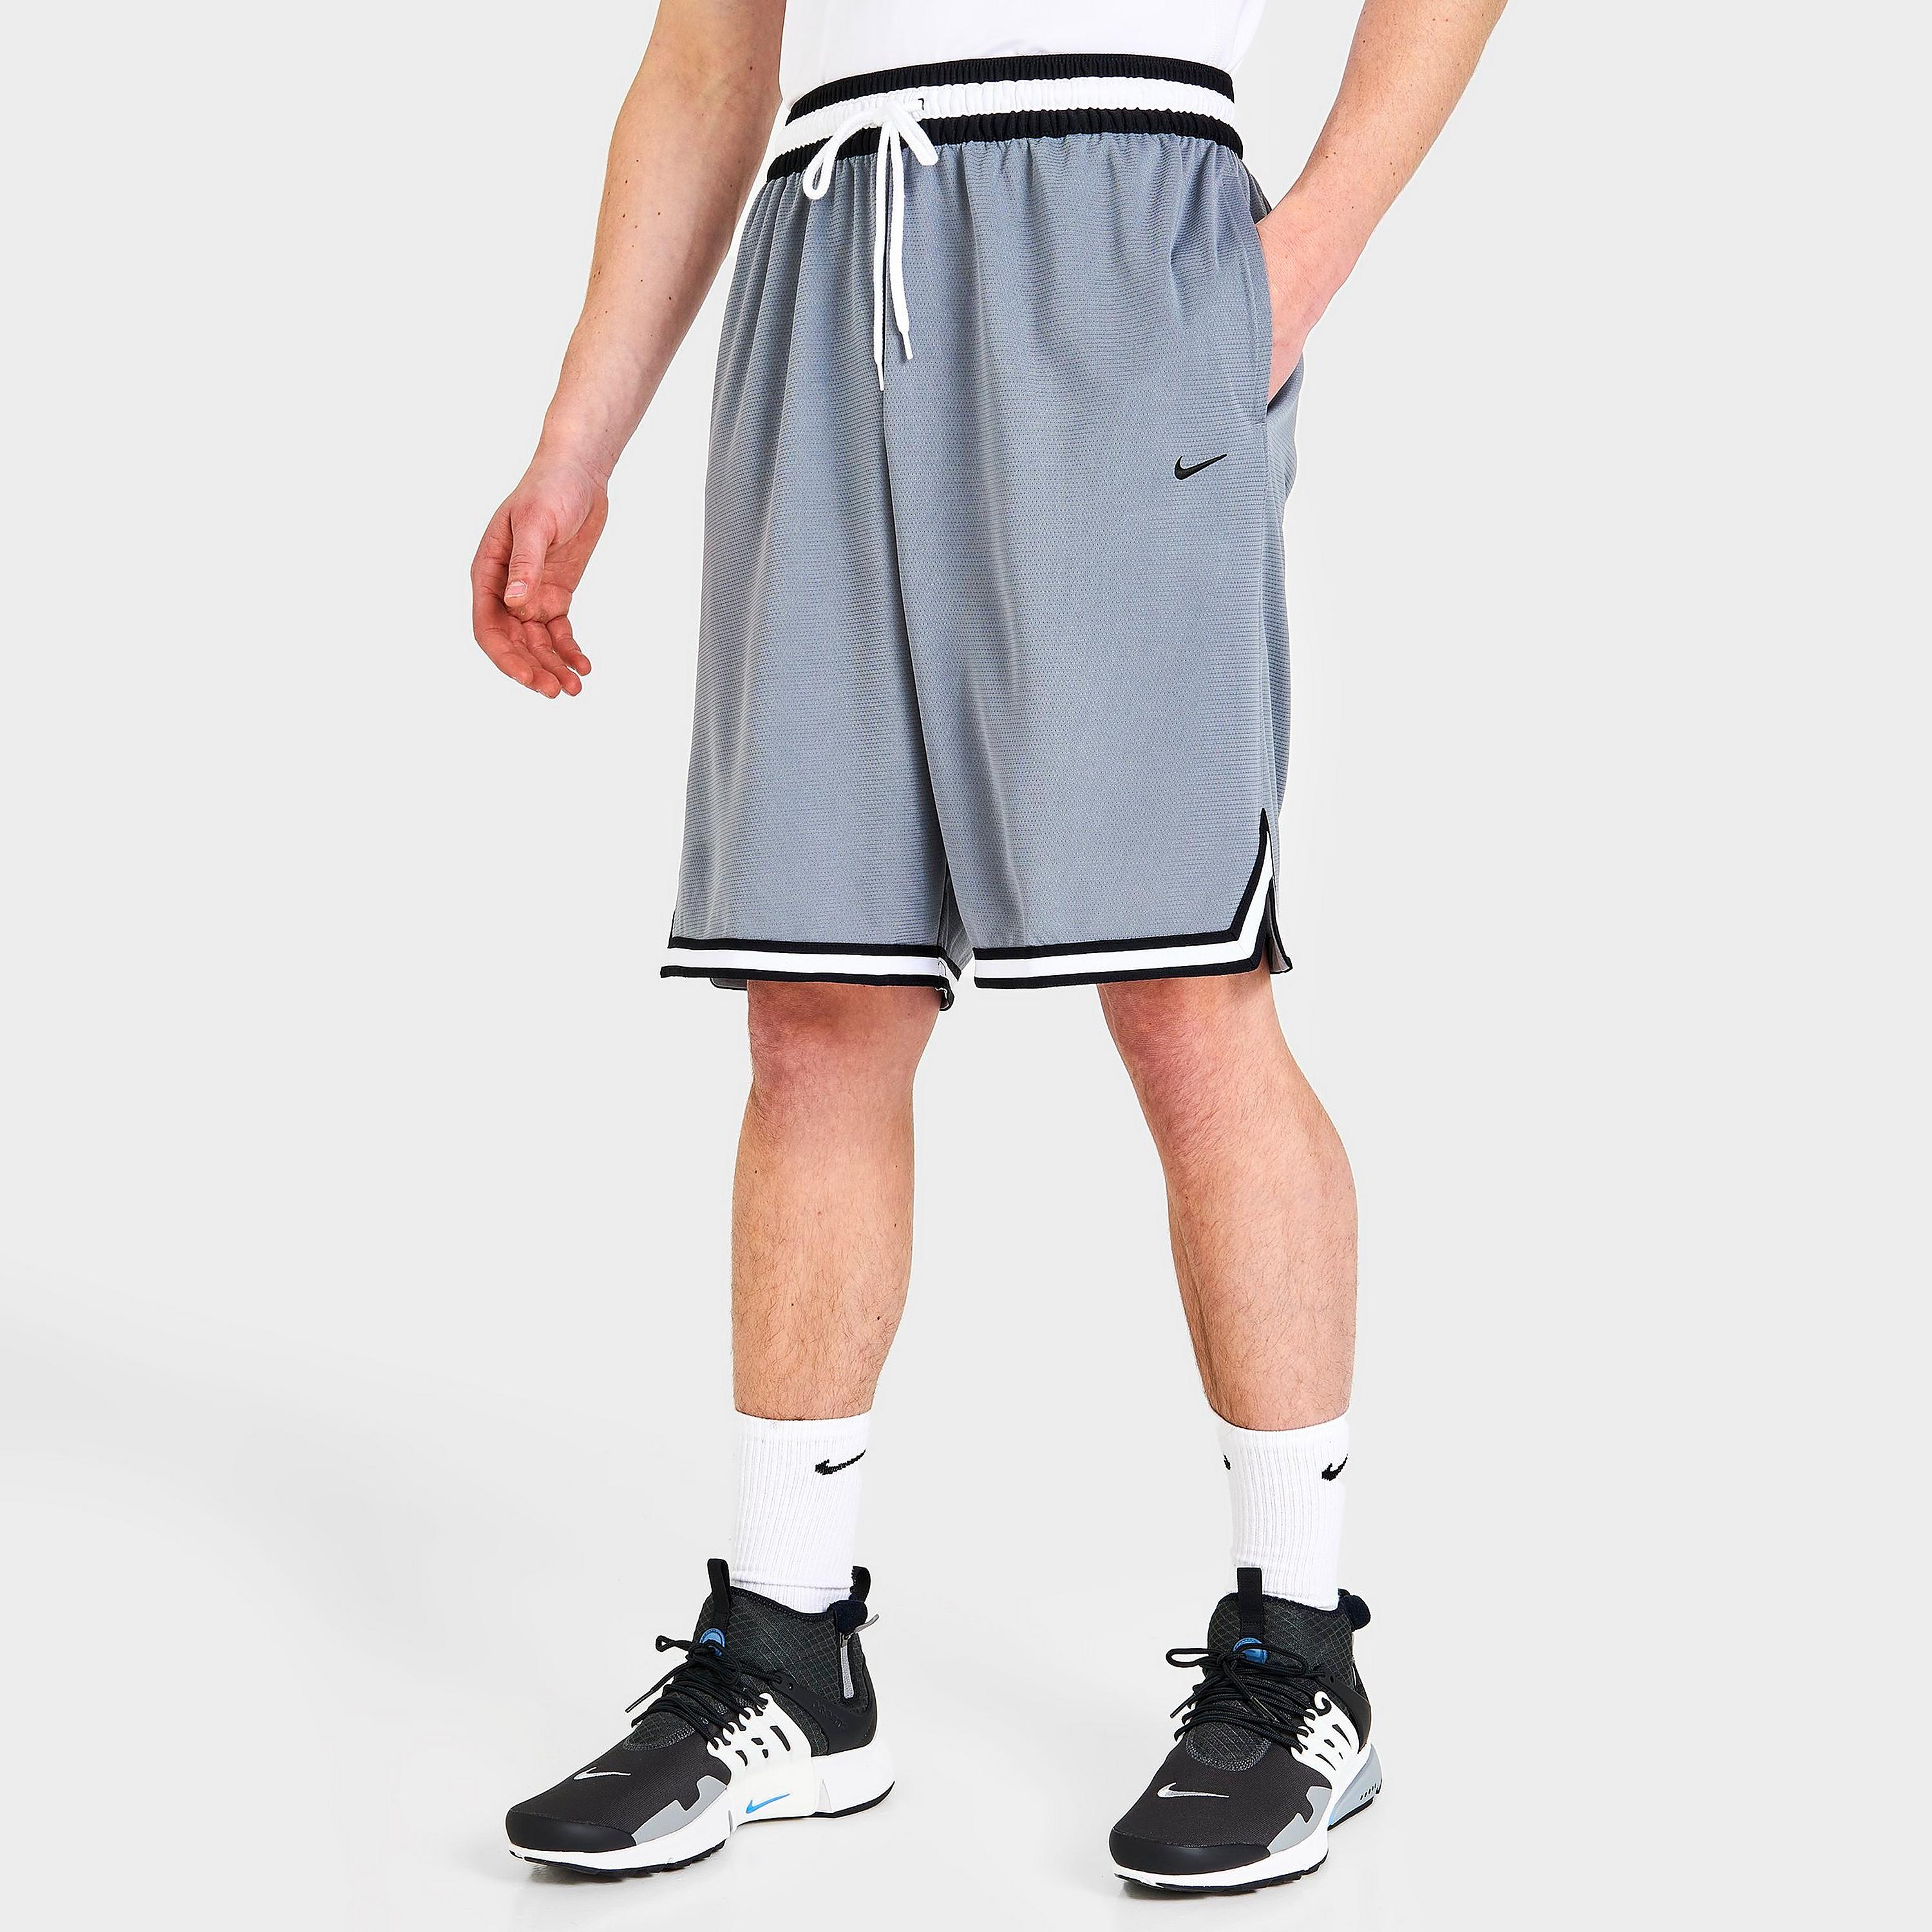 Мужские баскетбольные шорты Nike Dri-FIT DNA, серый – купить по выгодным ценам с доставкой из-за рубежа через сервис «CDEK.Shopping»